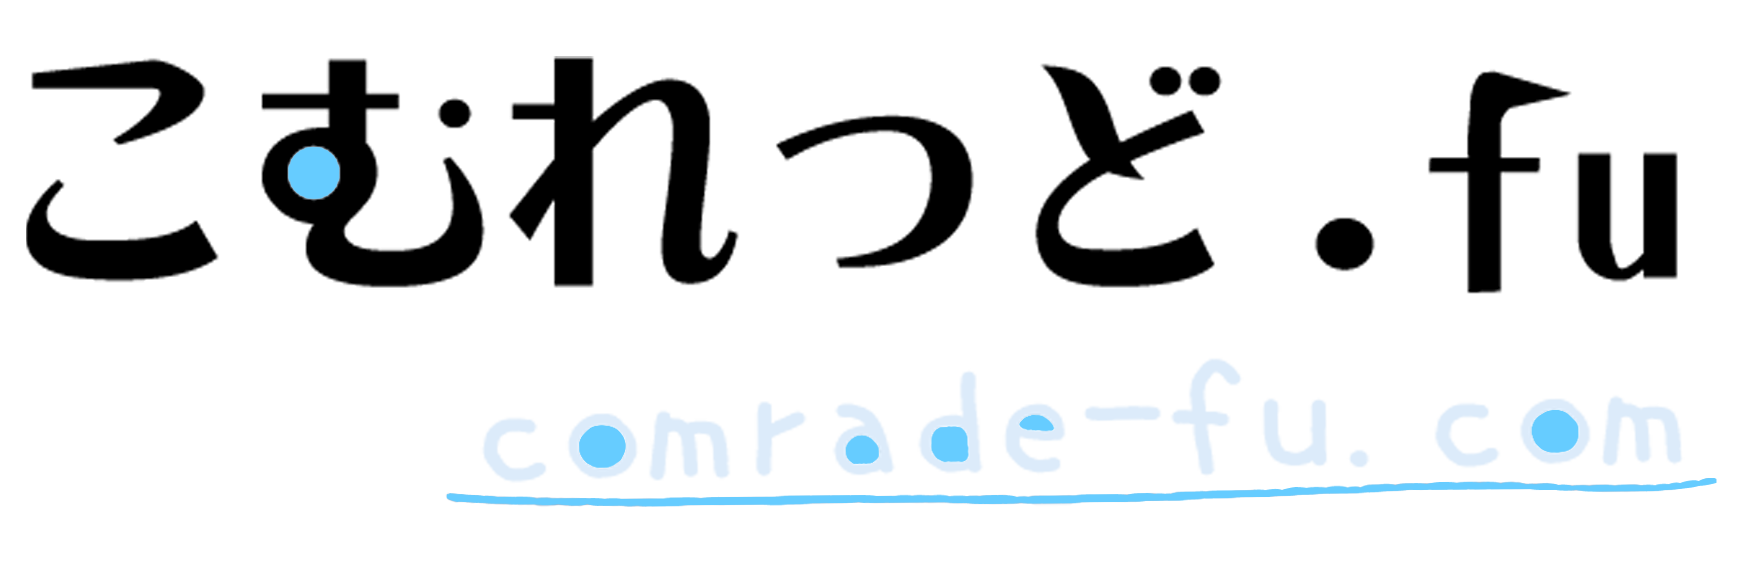 comradefu.com-logo_05